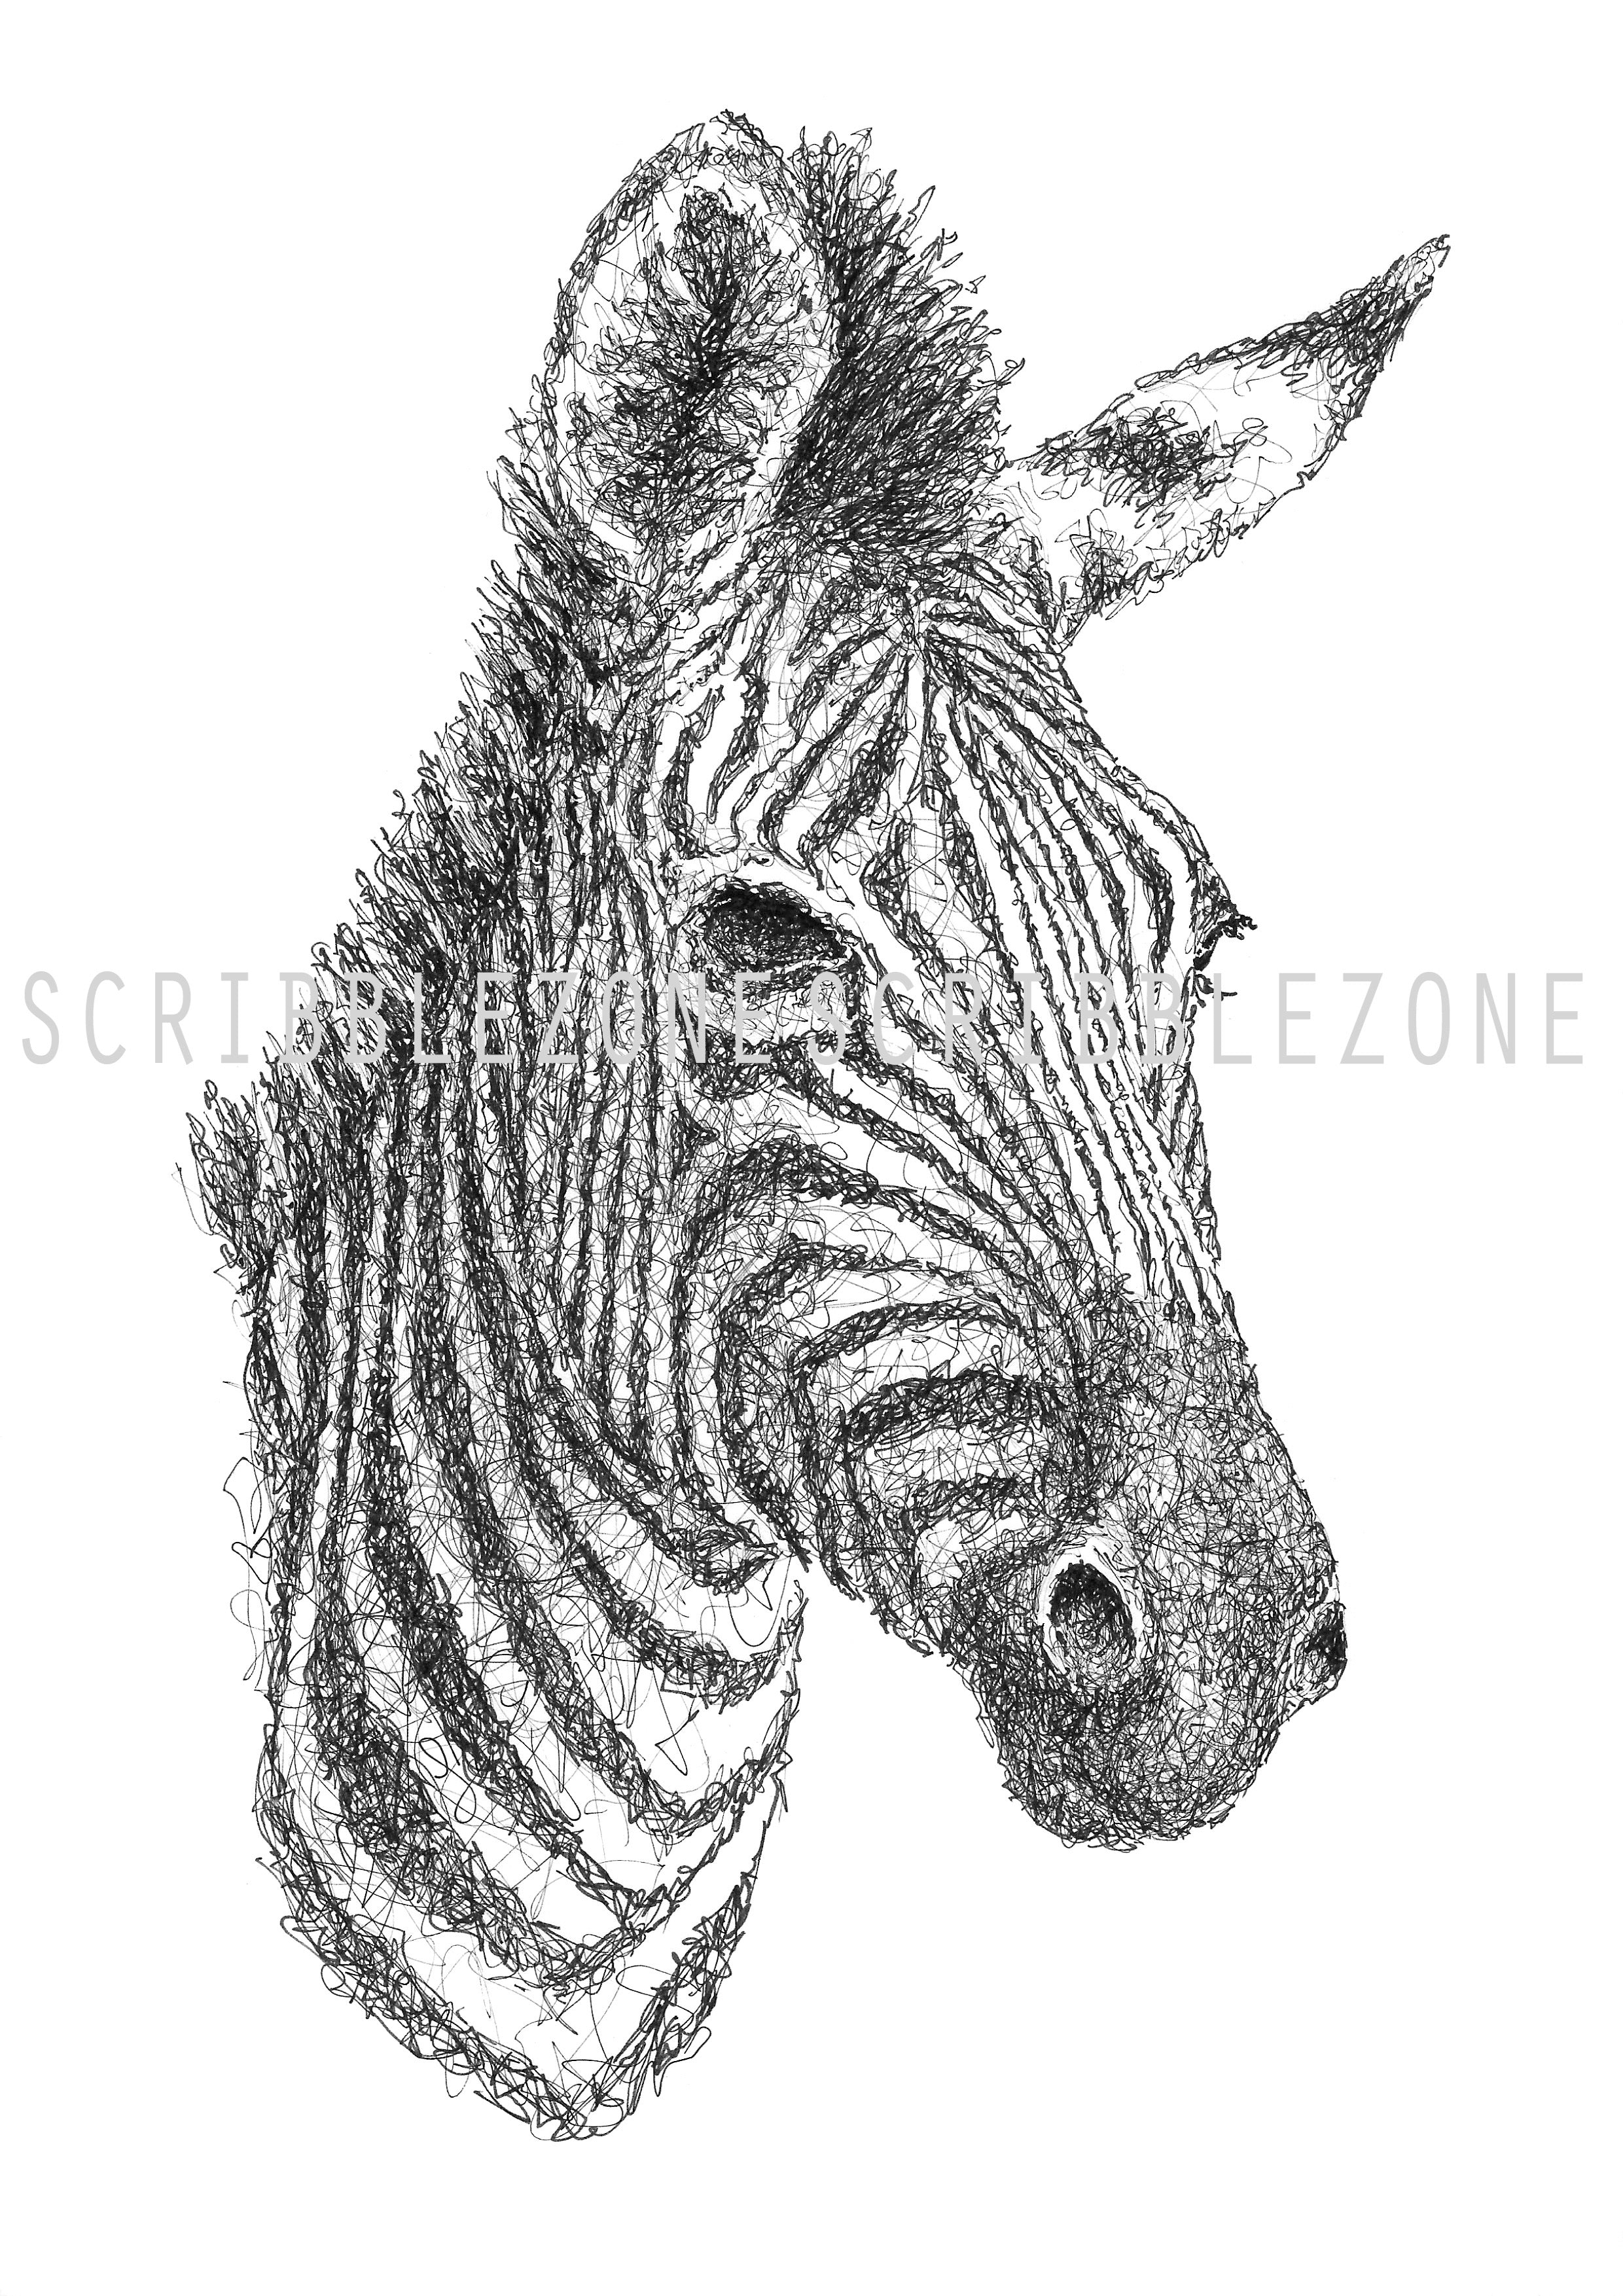 Scribbled Zebra